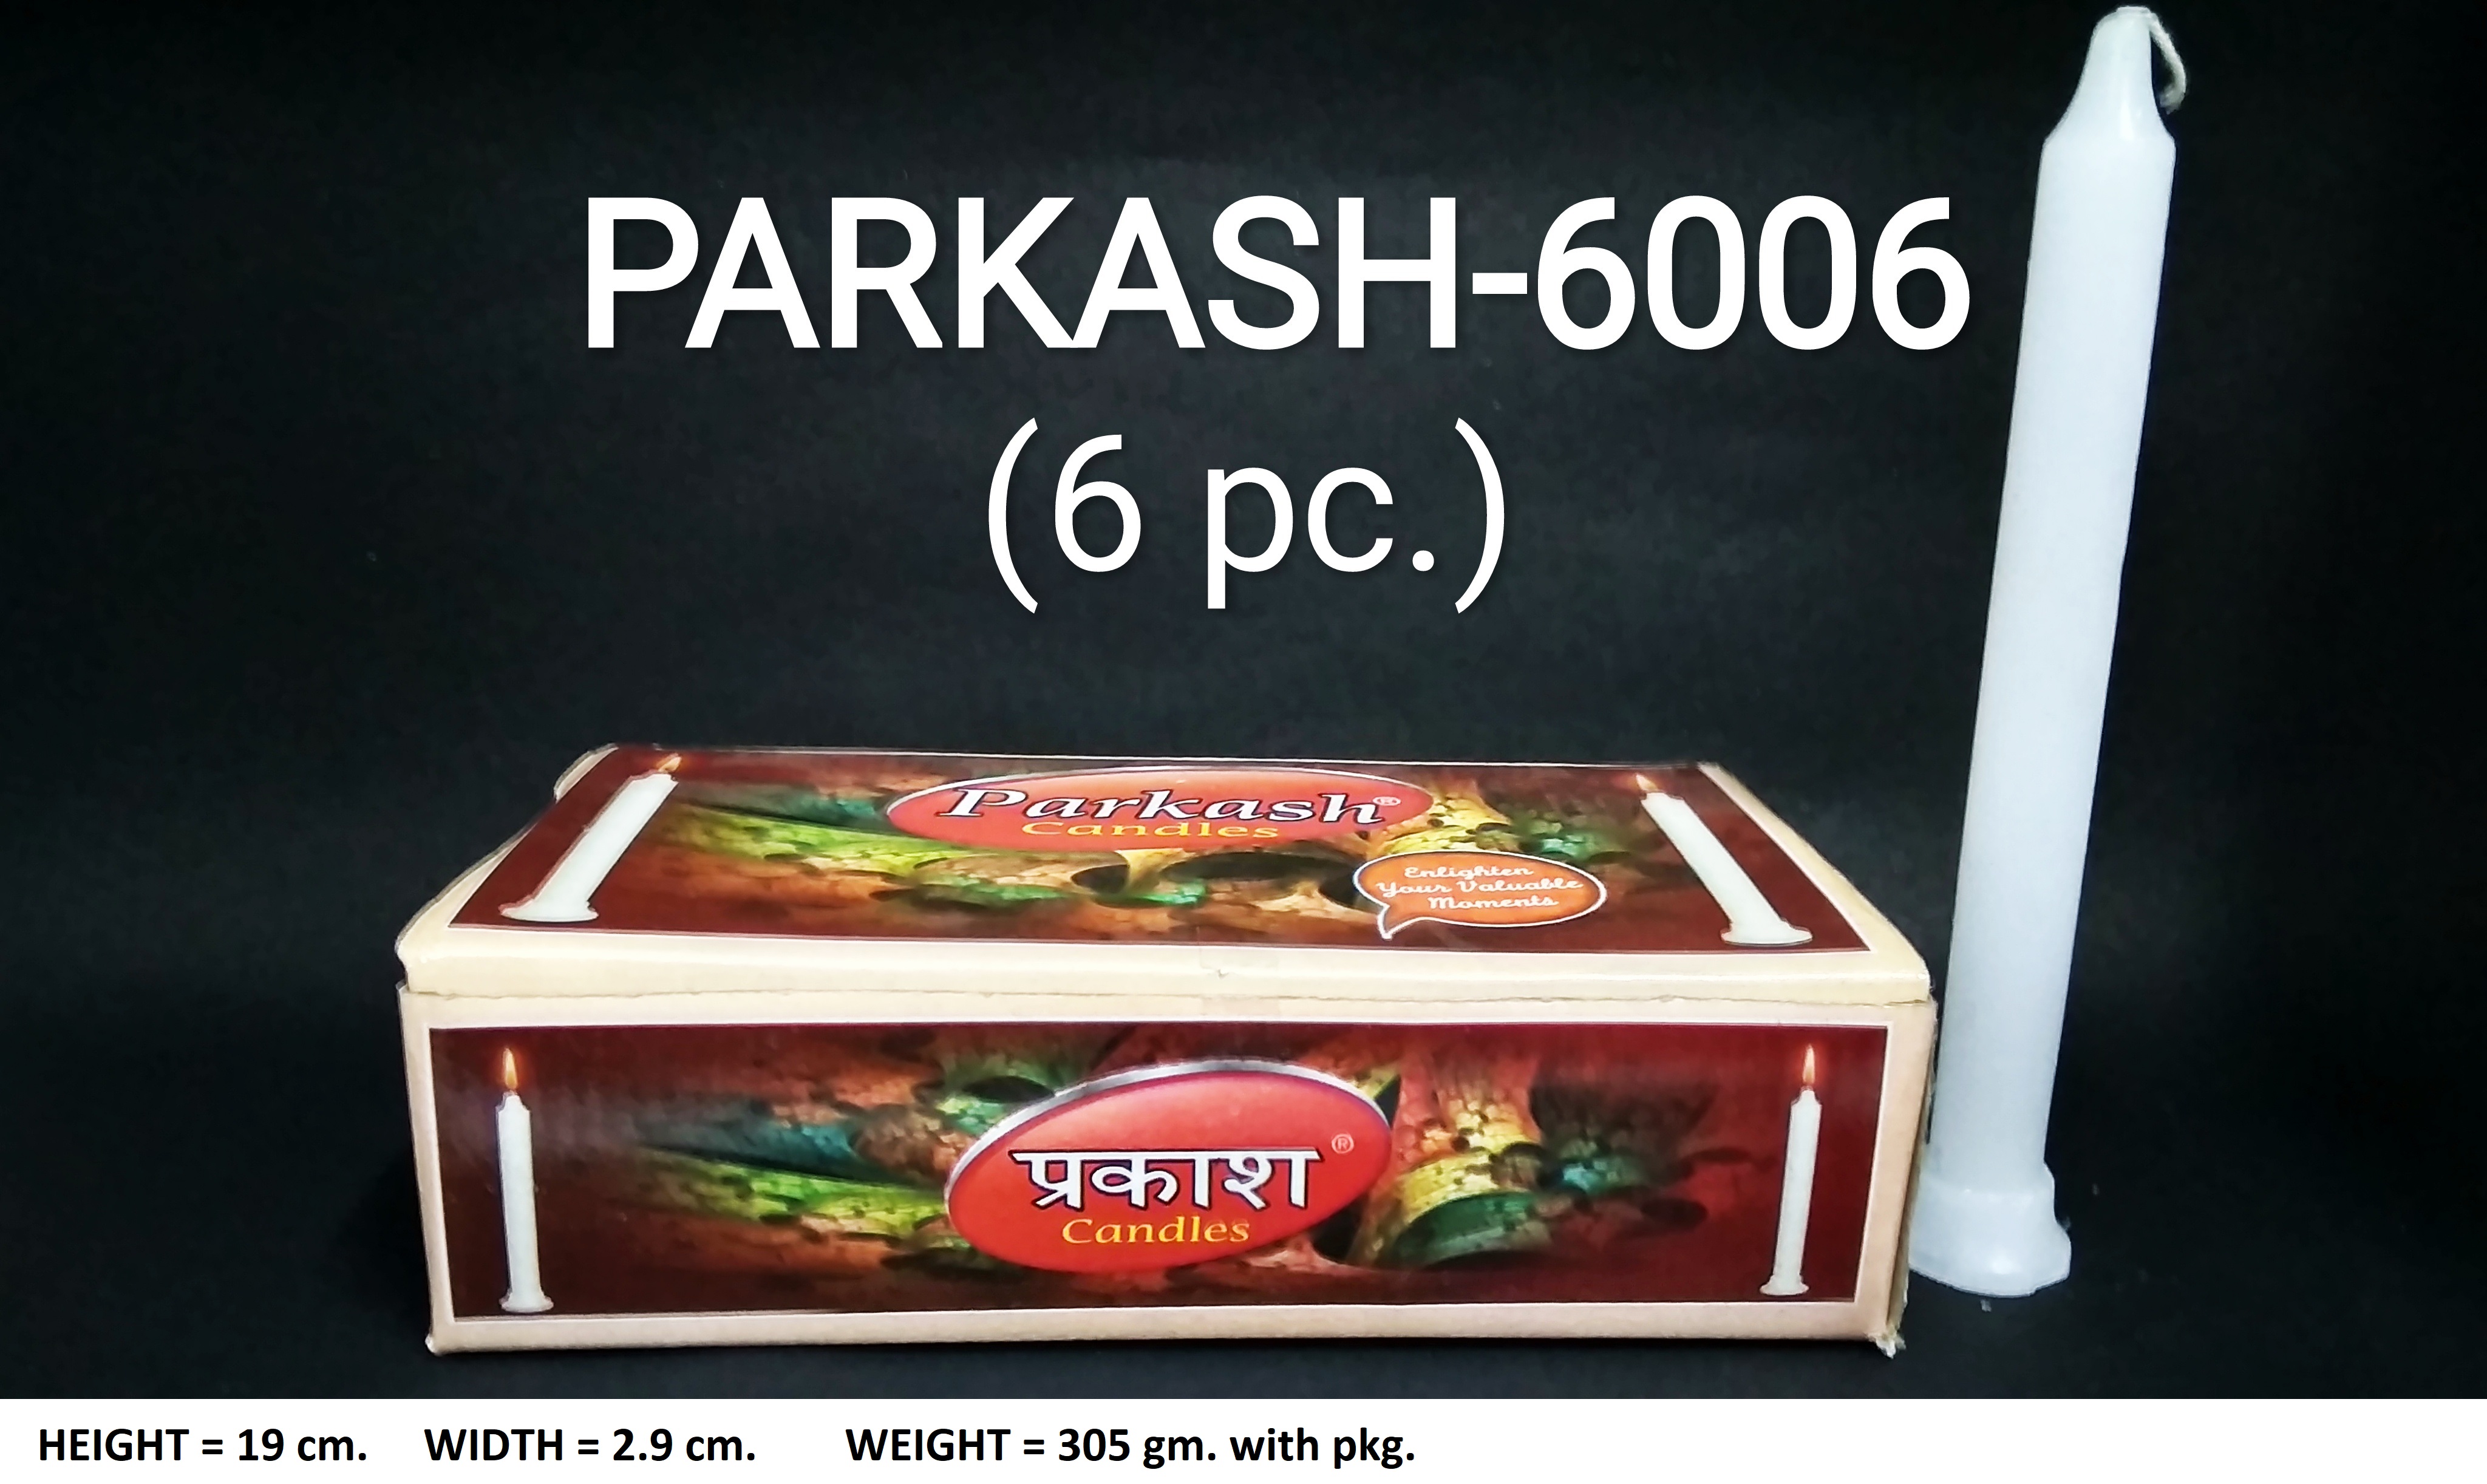 PARKASH-6006